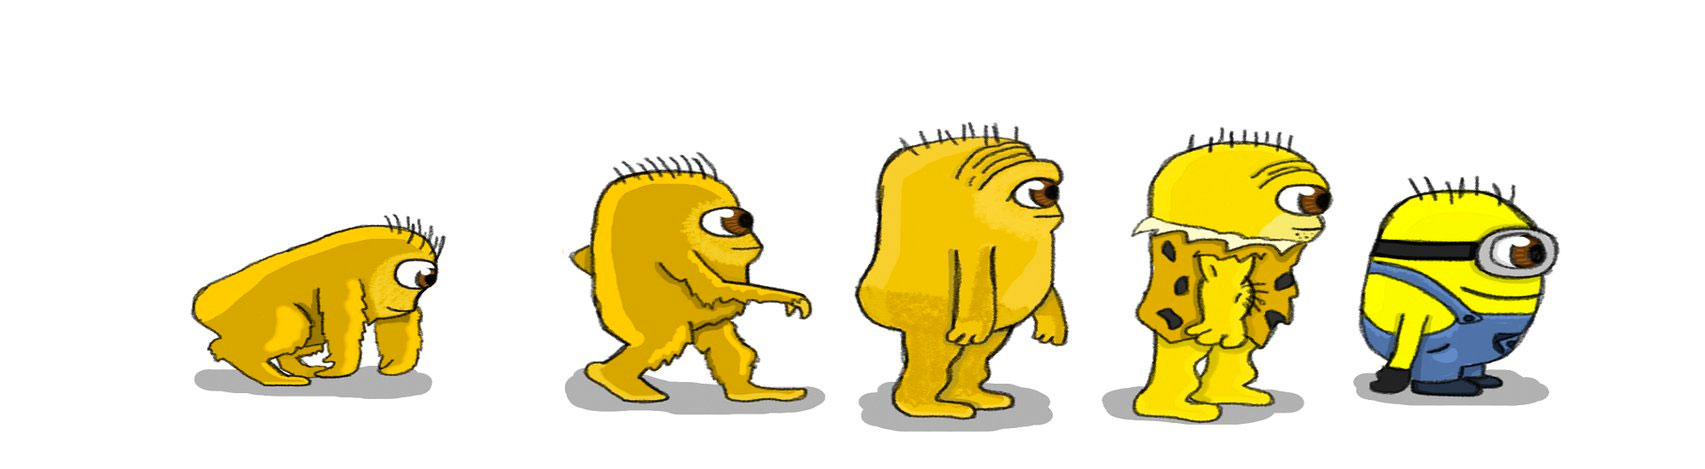 Evolución Minion